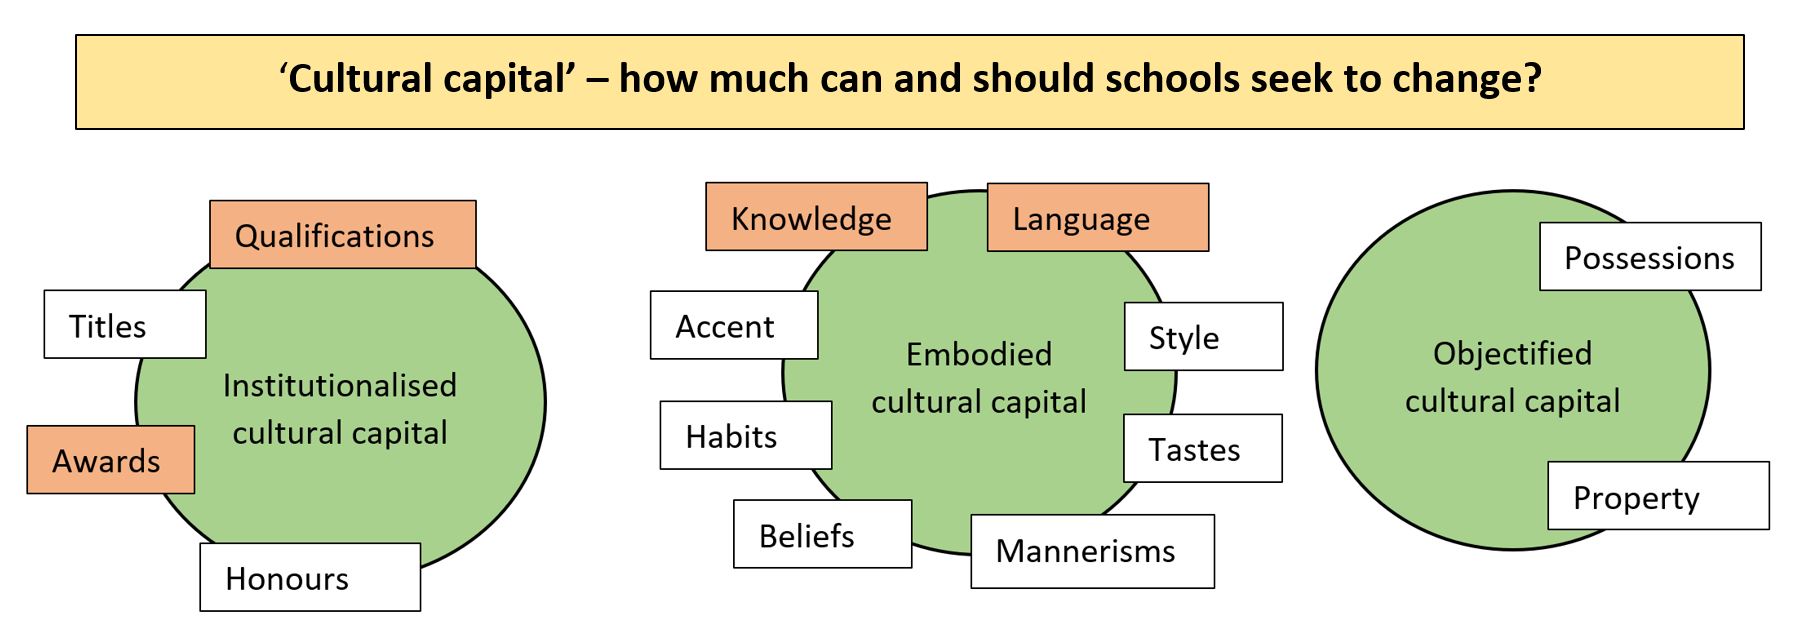 Cultural capital in schools